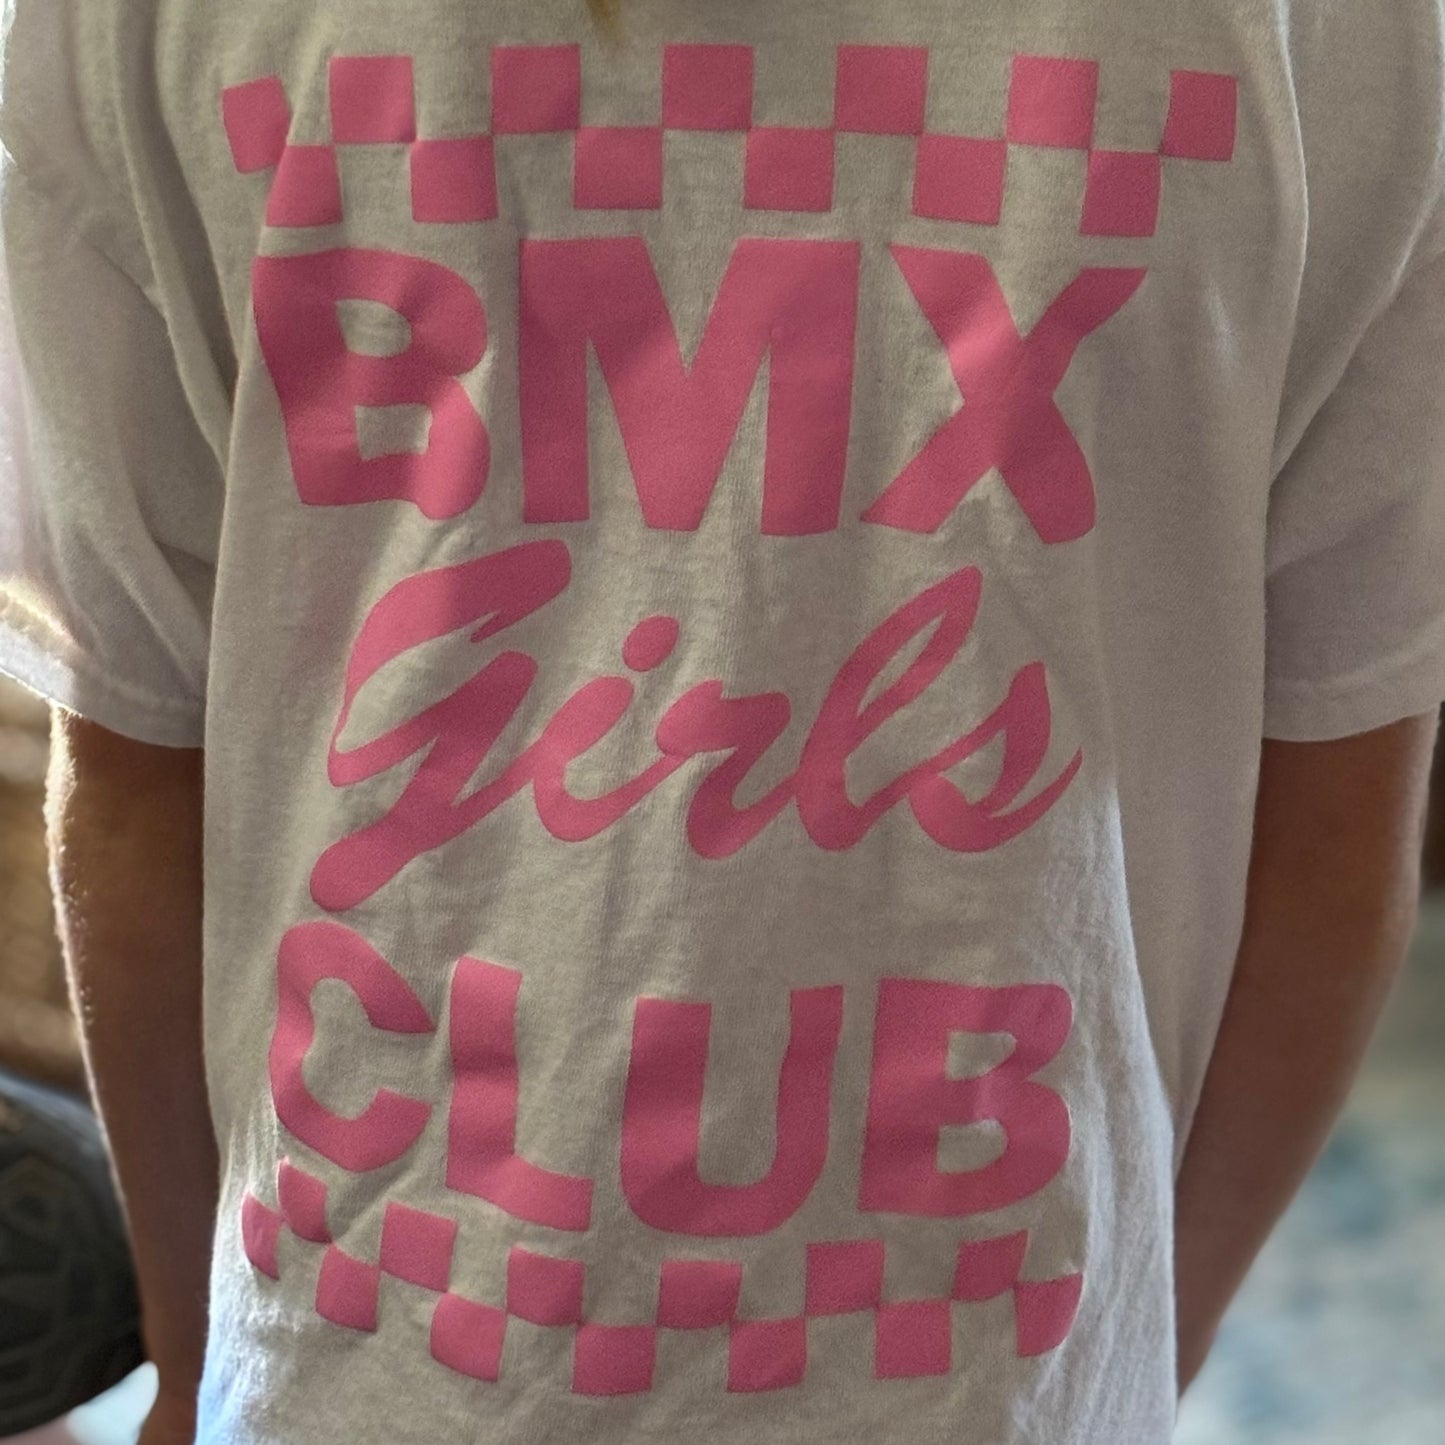 BMX Girls Club t-shirt